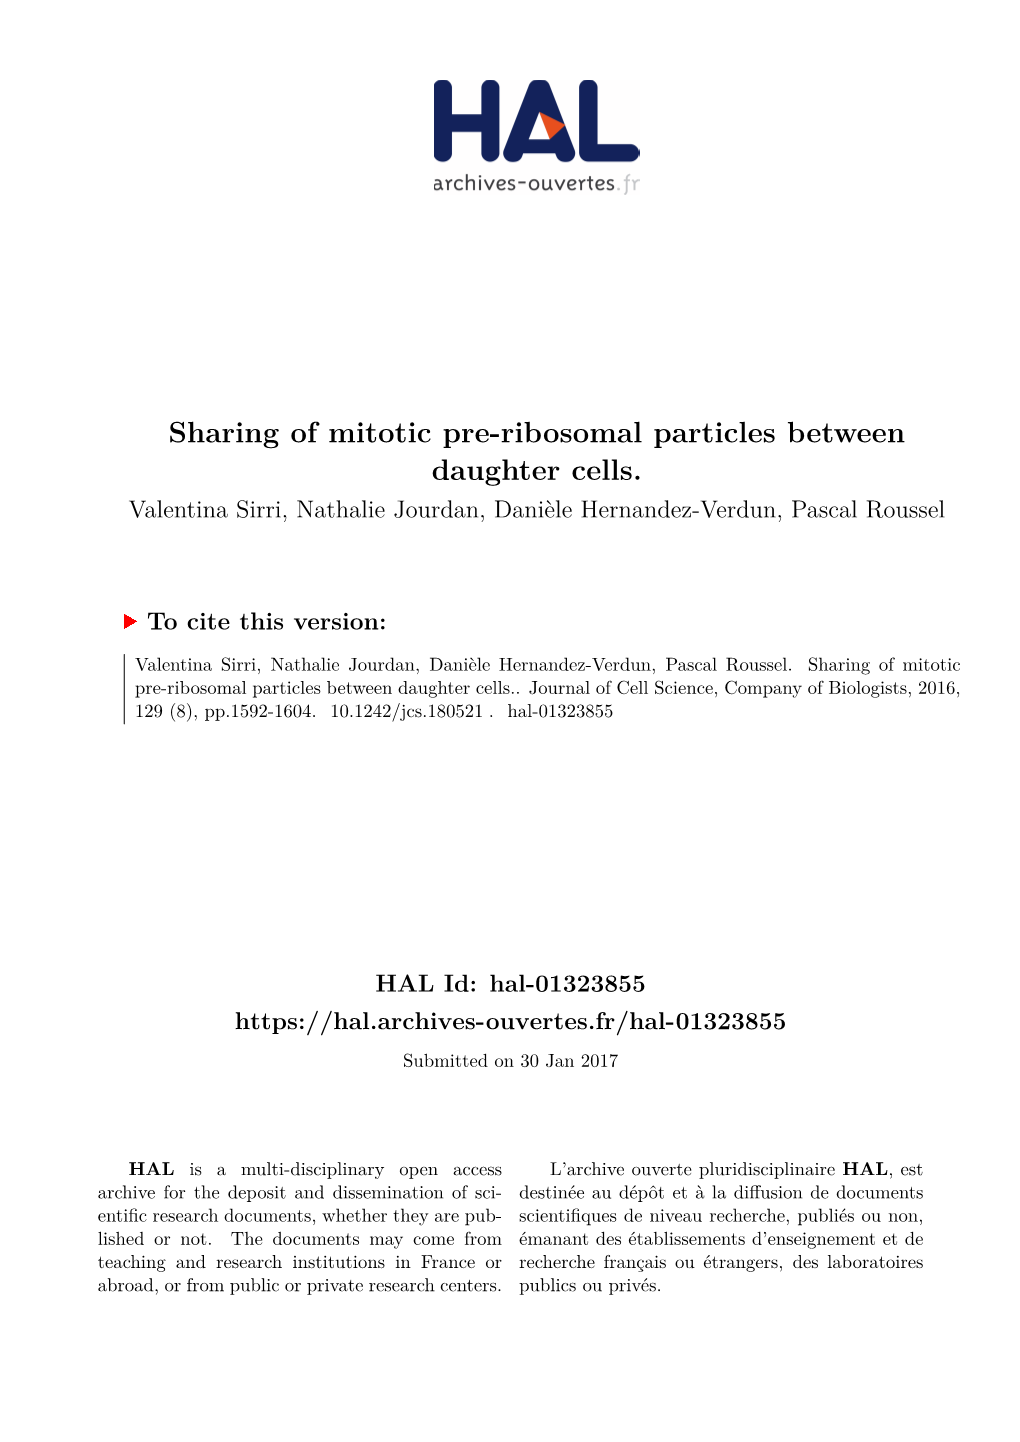 Sharing of Mitotic Pre-Ribosomal Particles Between Daughter Cells. Valentina Sirri, Nathalie Jourdan, Danièle Hernandez-Verdun, Pascal Roussel